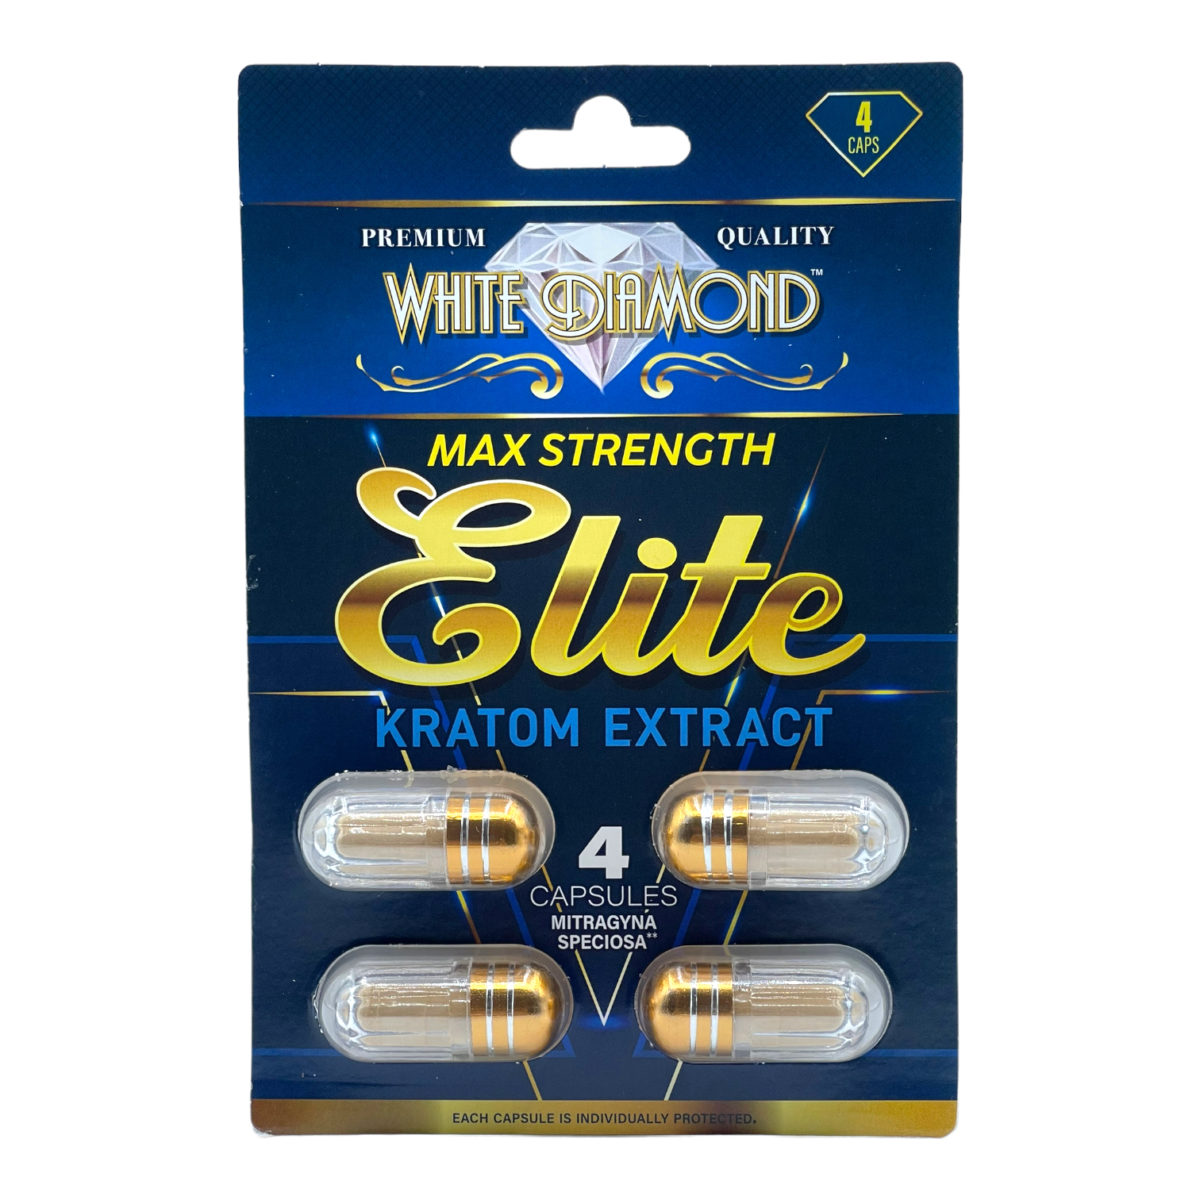 White Diamond Elite Kratom Extract Capsules